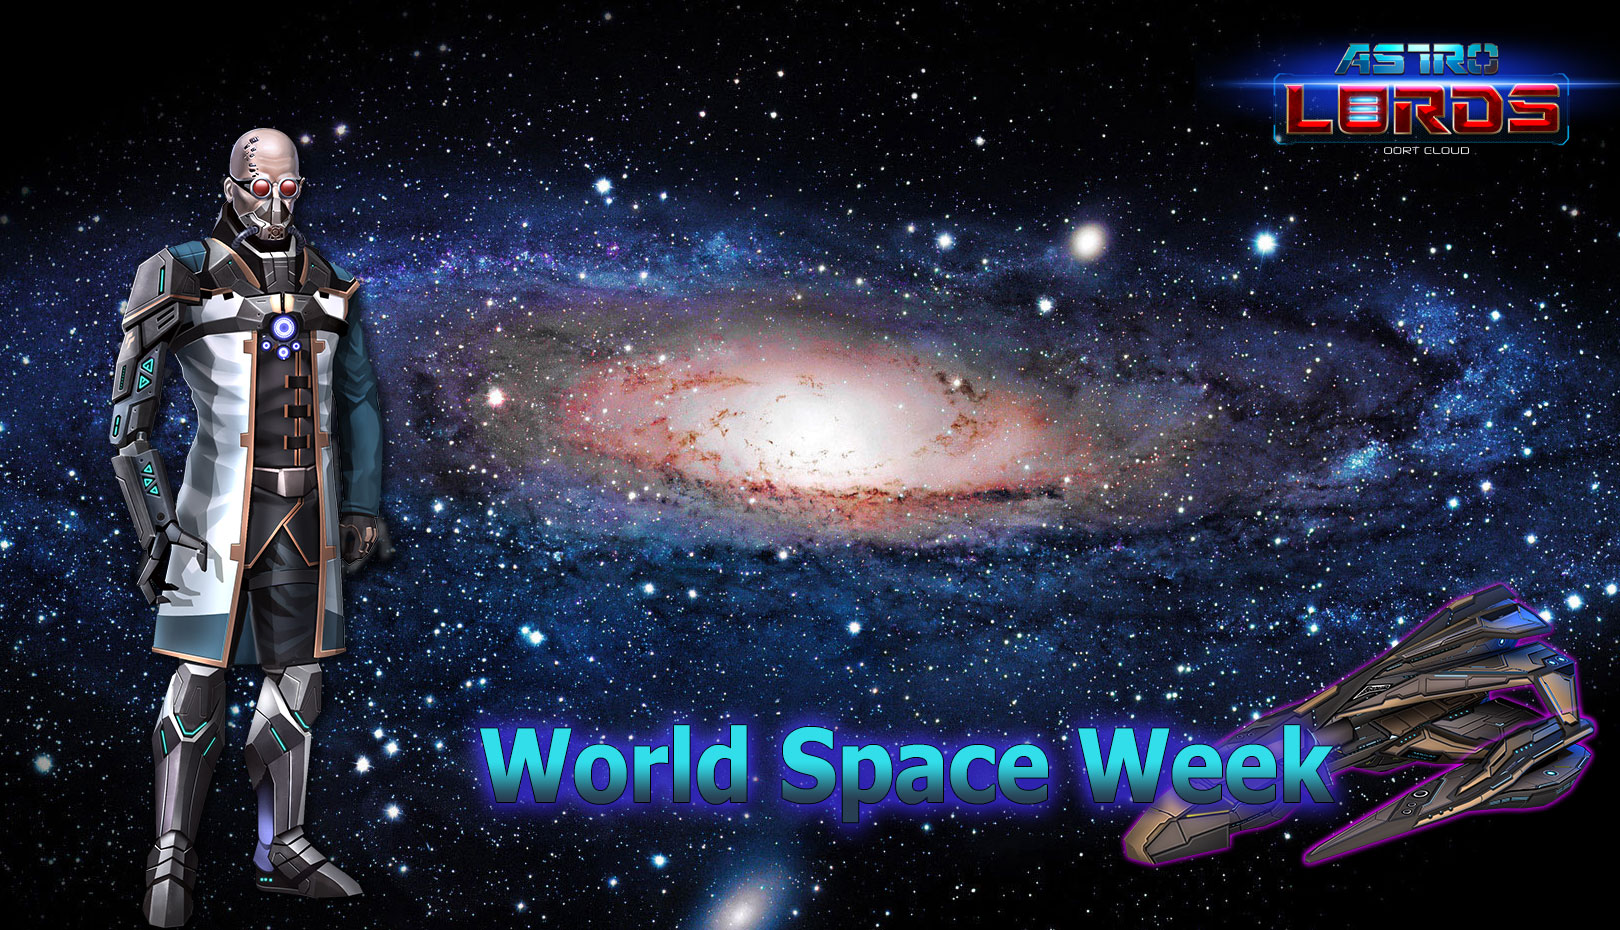 лорды астролорды игры новости космос неделя всемирная space week game astrolords mmo online rst indie unity bonus event